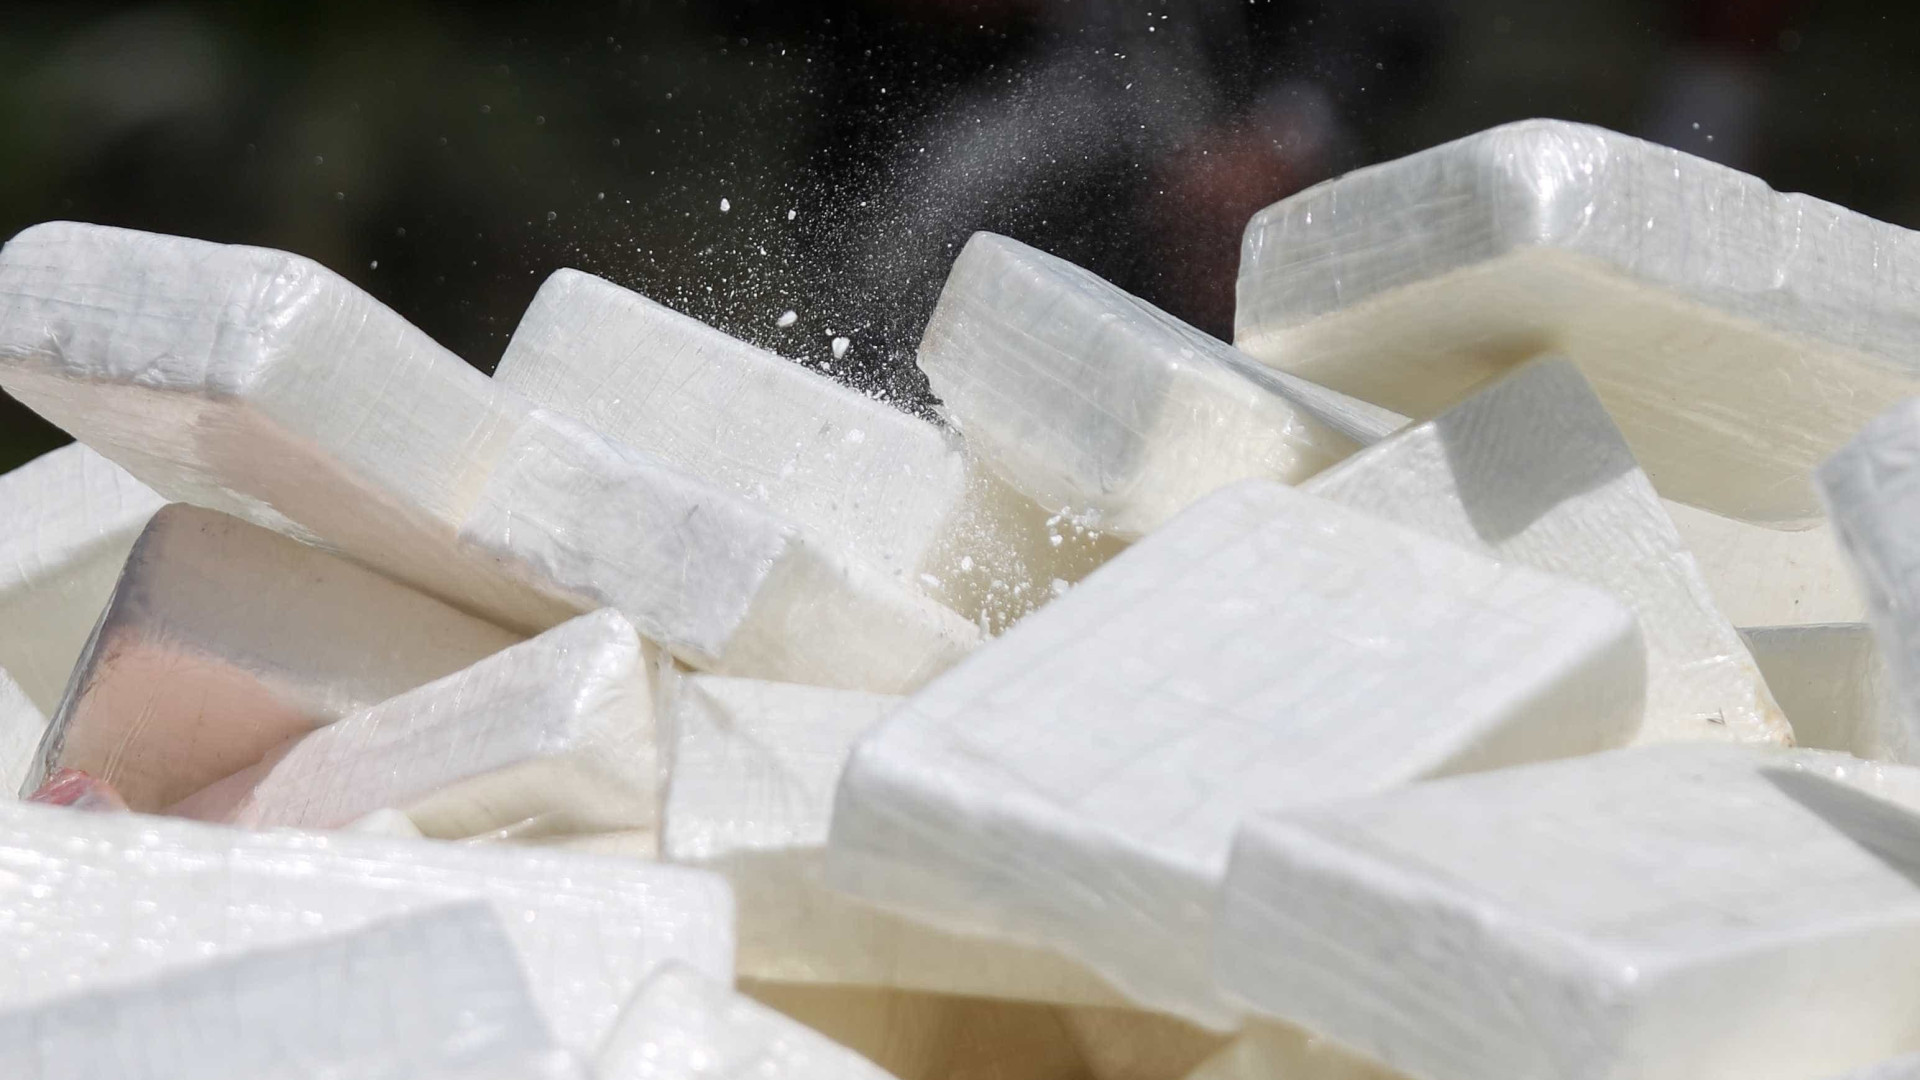 Bolivianos são presos em SP com malas de roupa engomada com cocaína